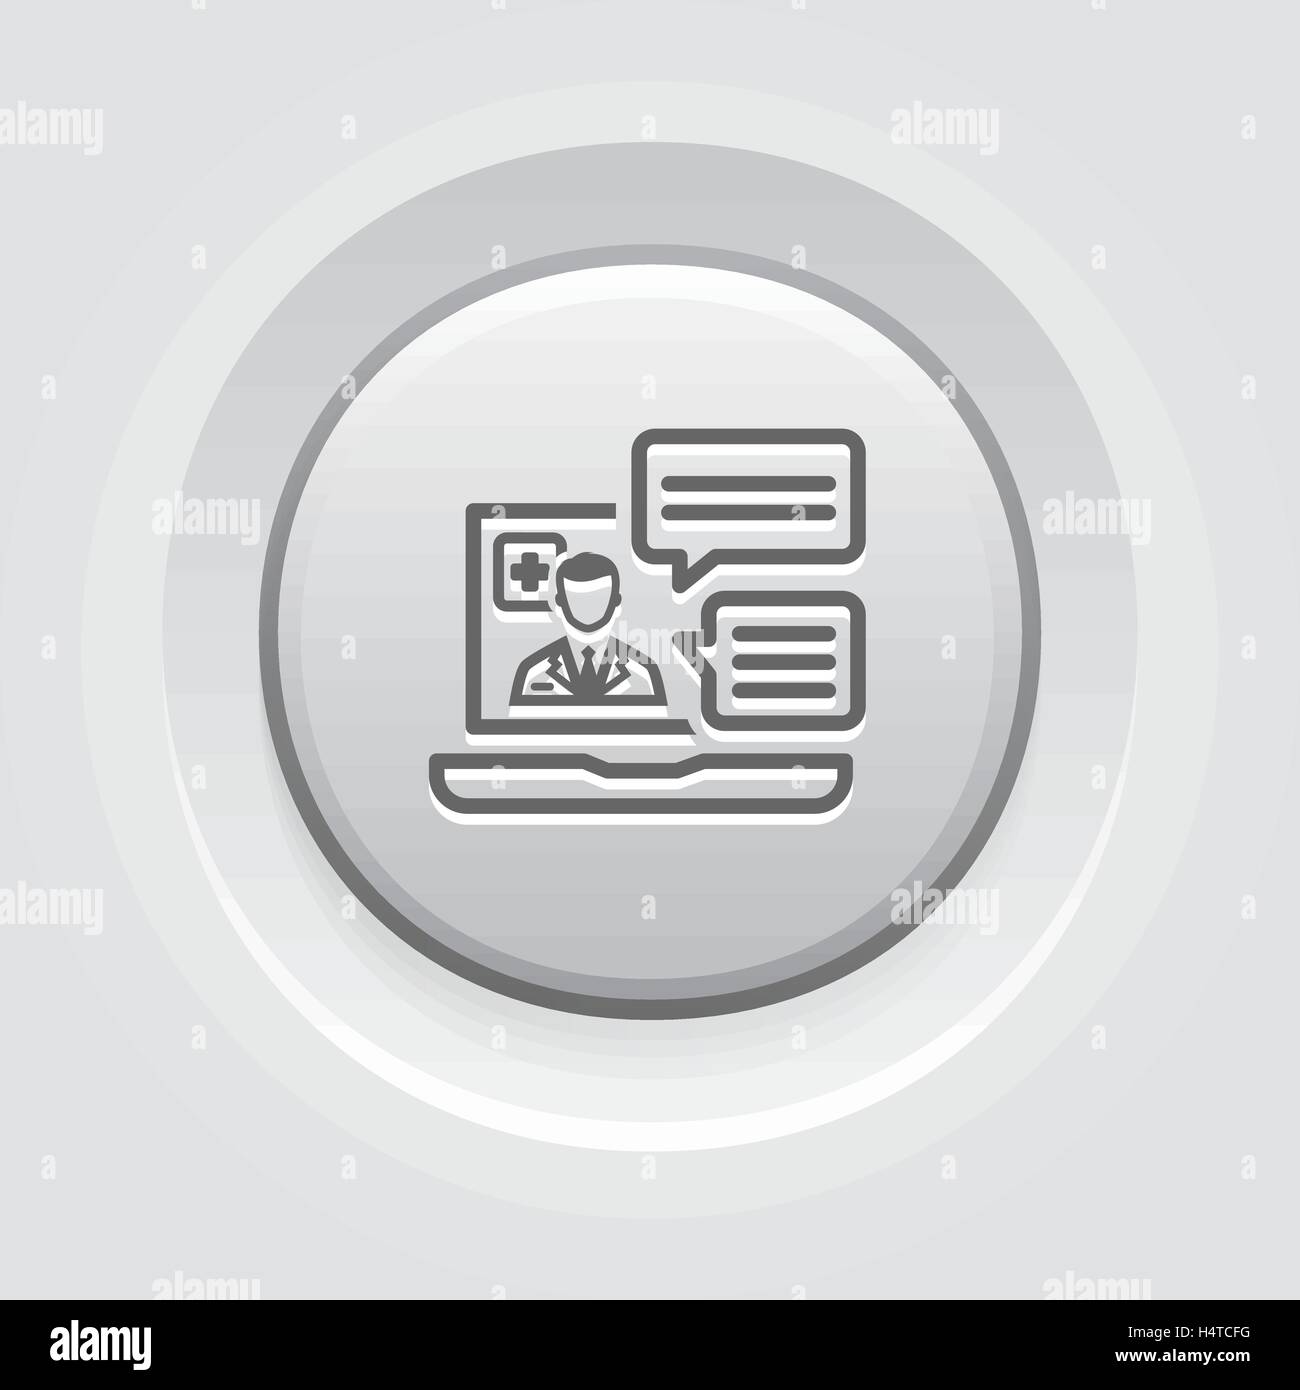 Online Medical Services Icon. Grey Button Design. Stock Vector